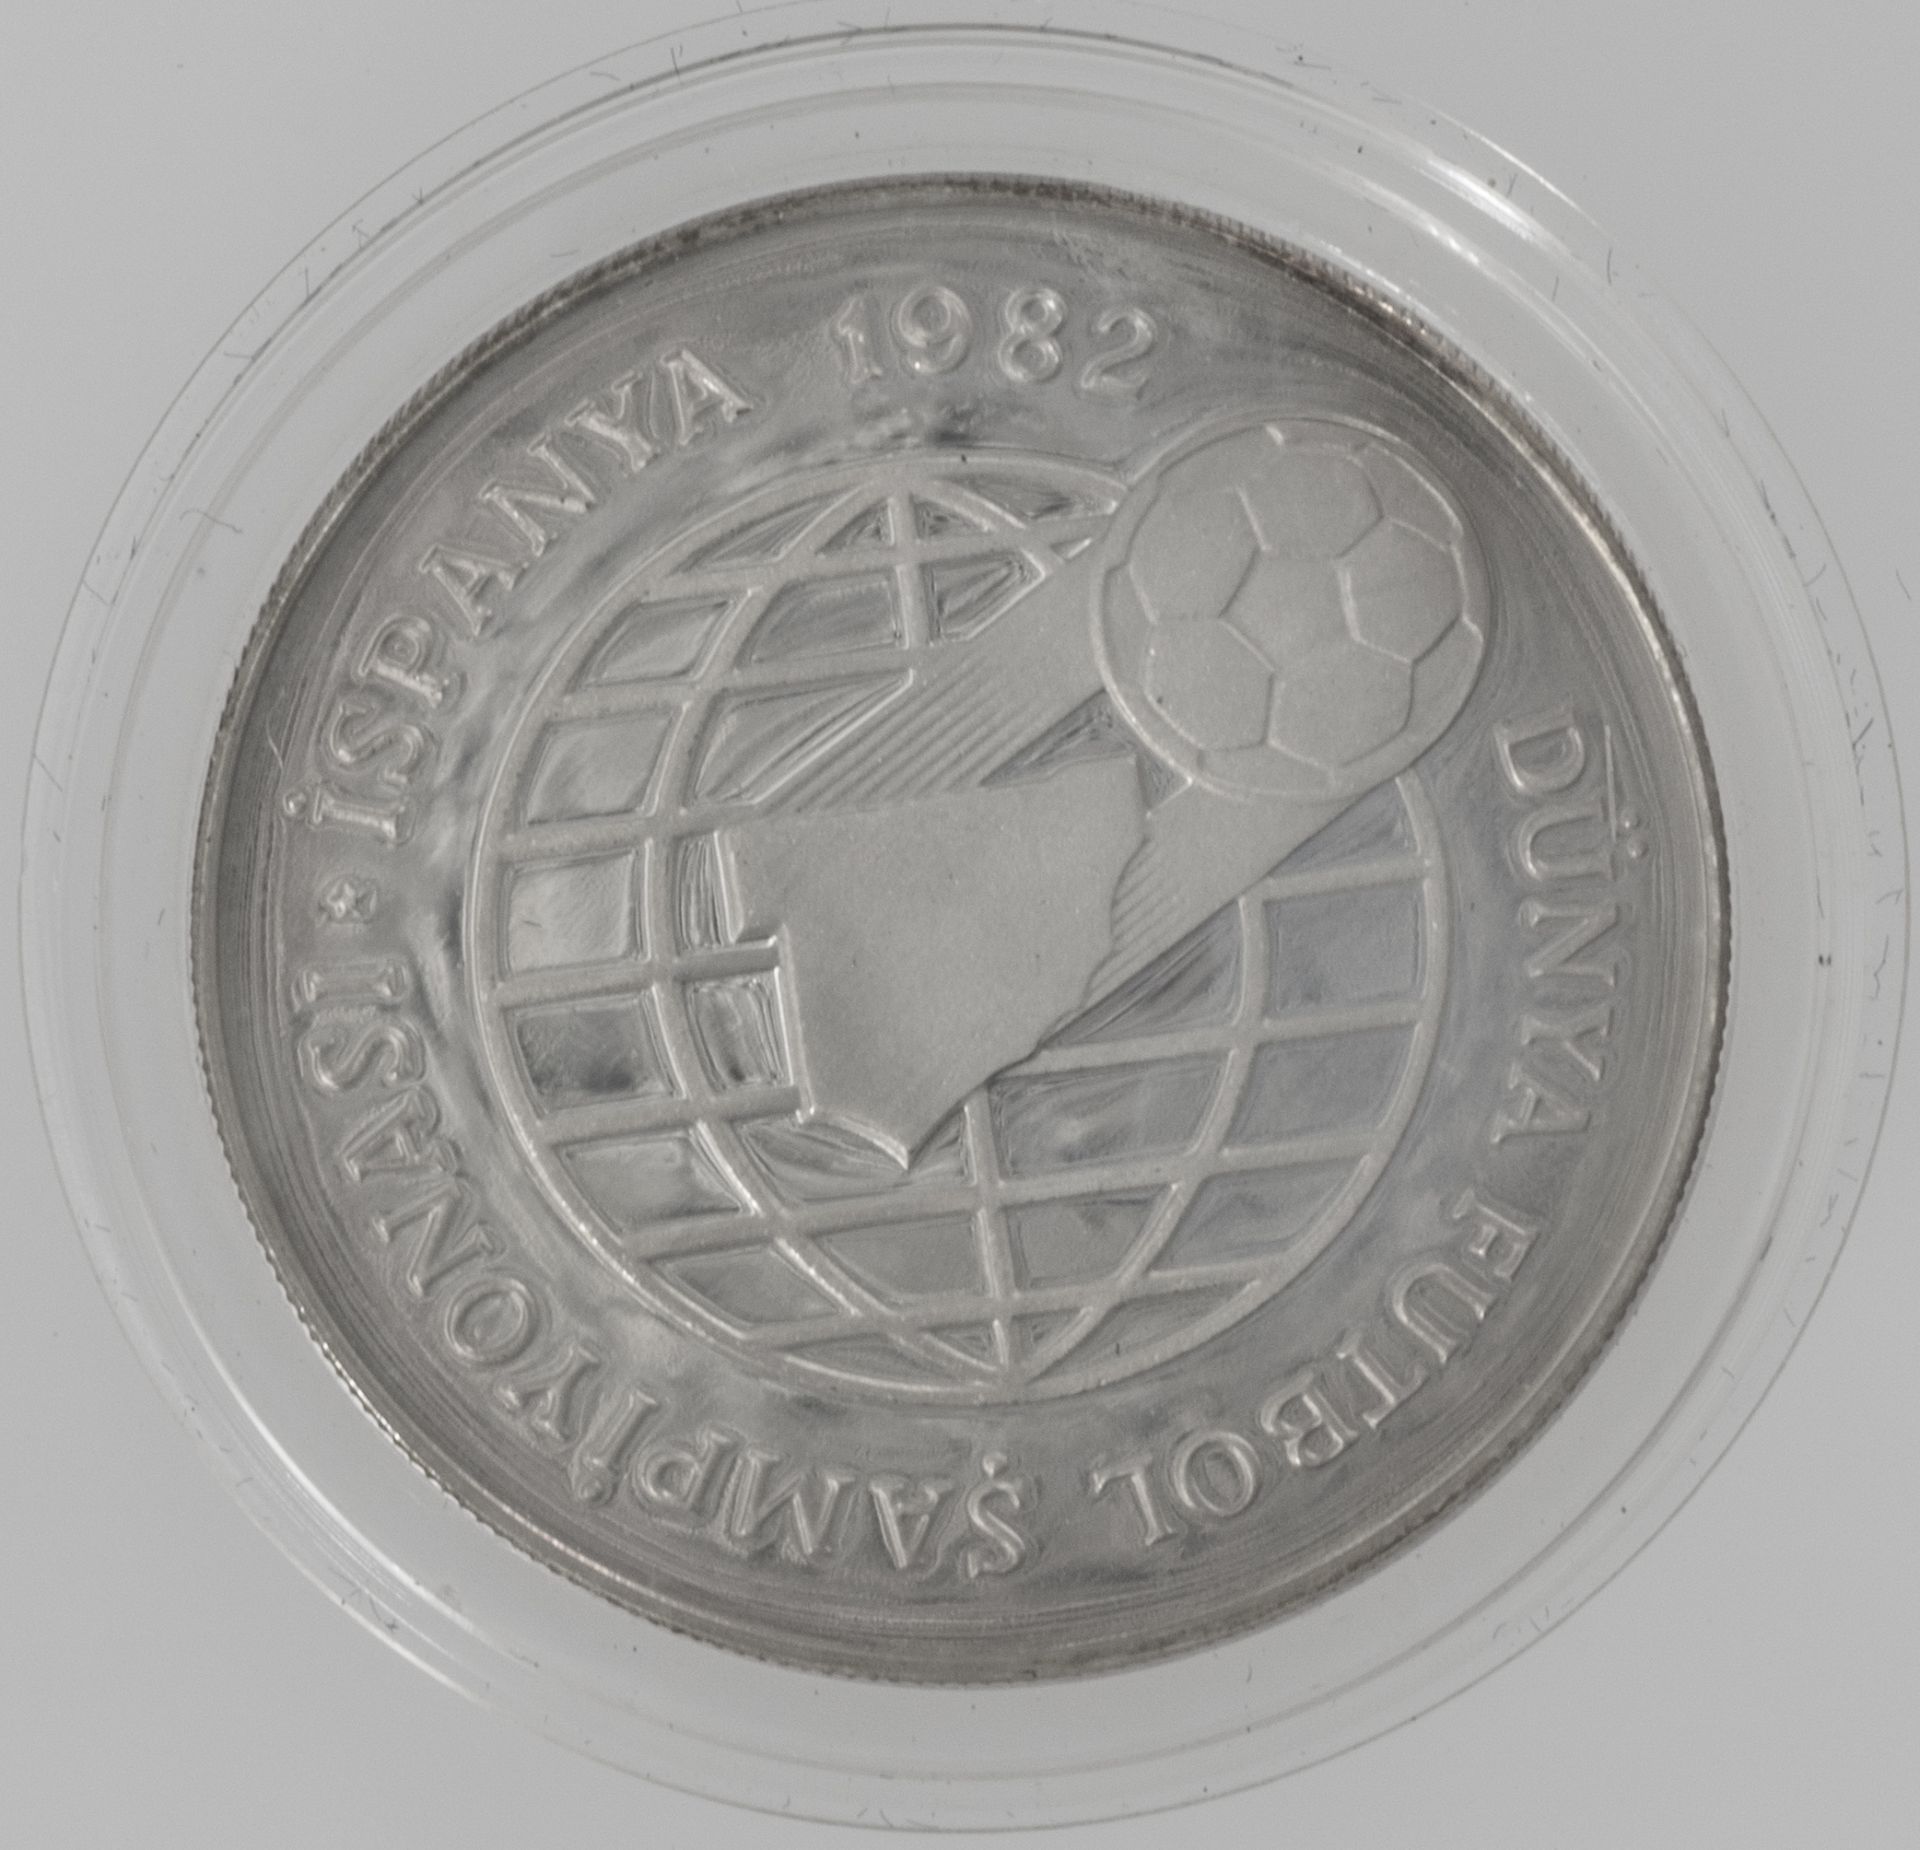 Türkei 1982, 500 Lira - Silbermünze "Fußball WM in Spanien". KM: 952. Erhaltung: stgl. Etwas